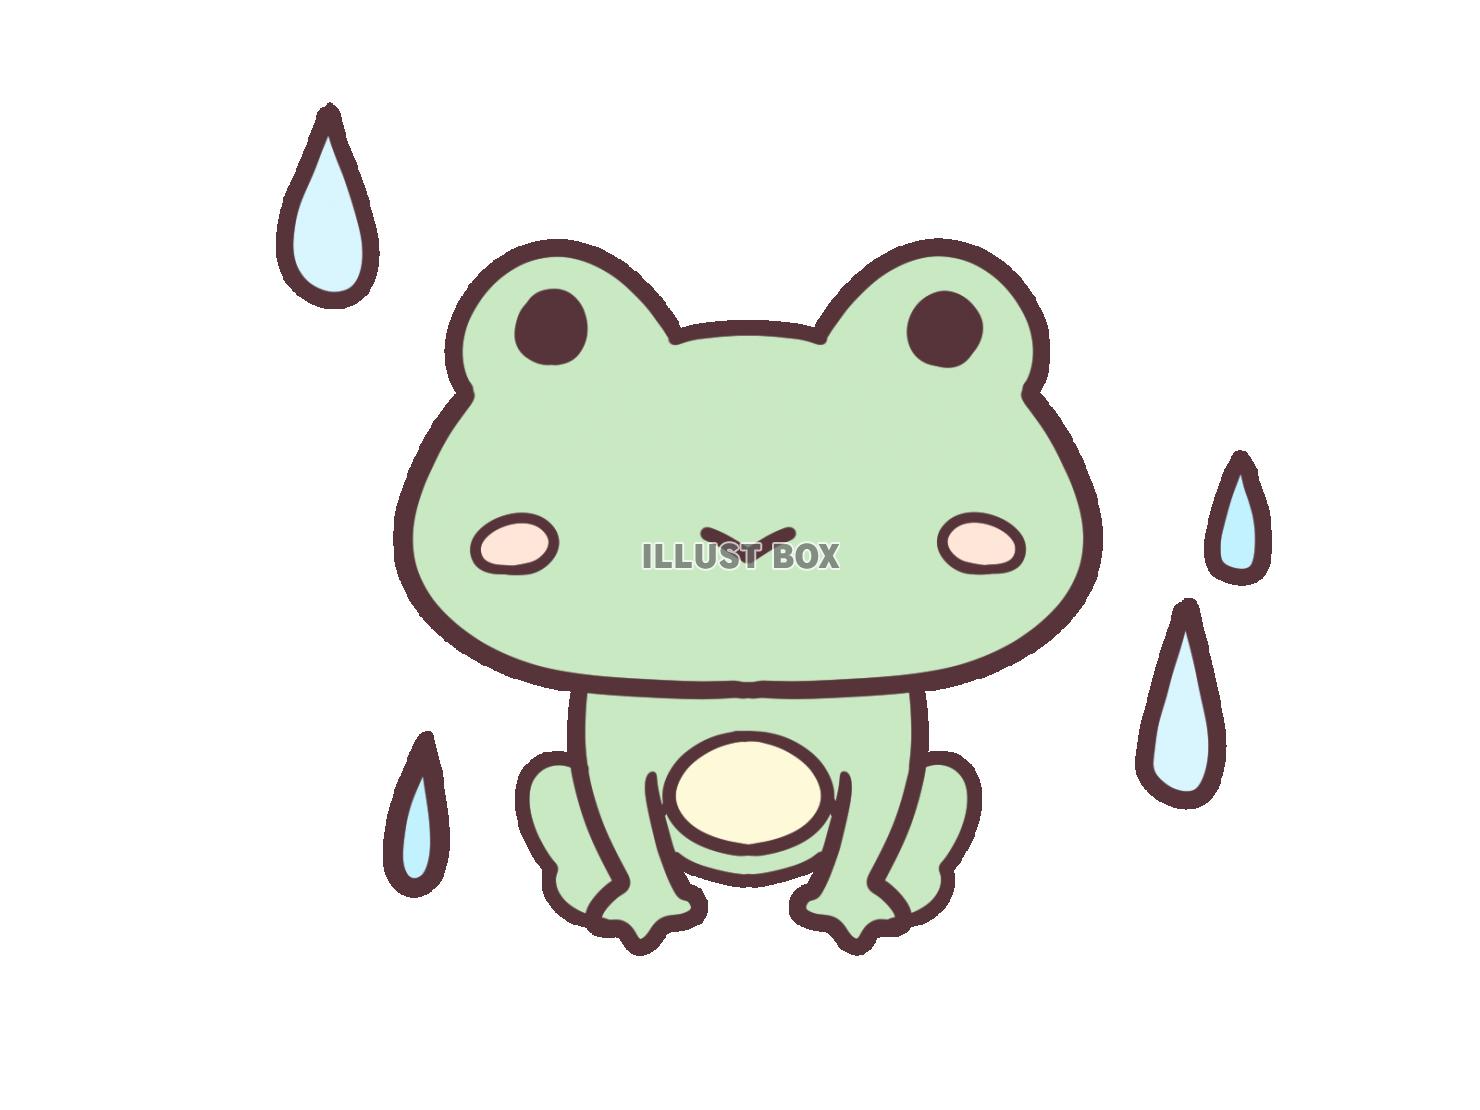 雨の中のカエル